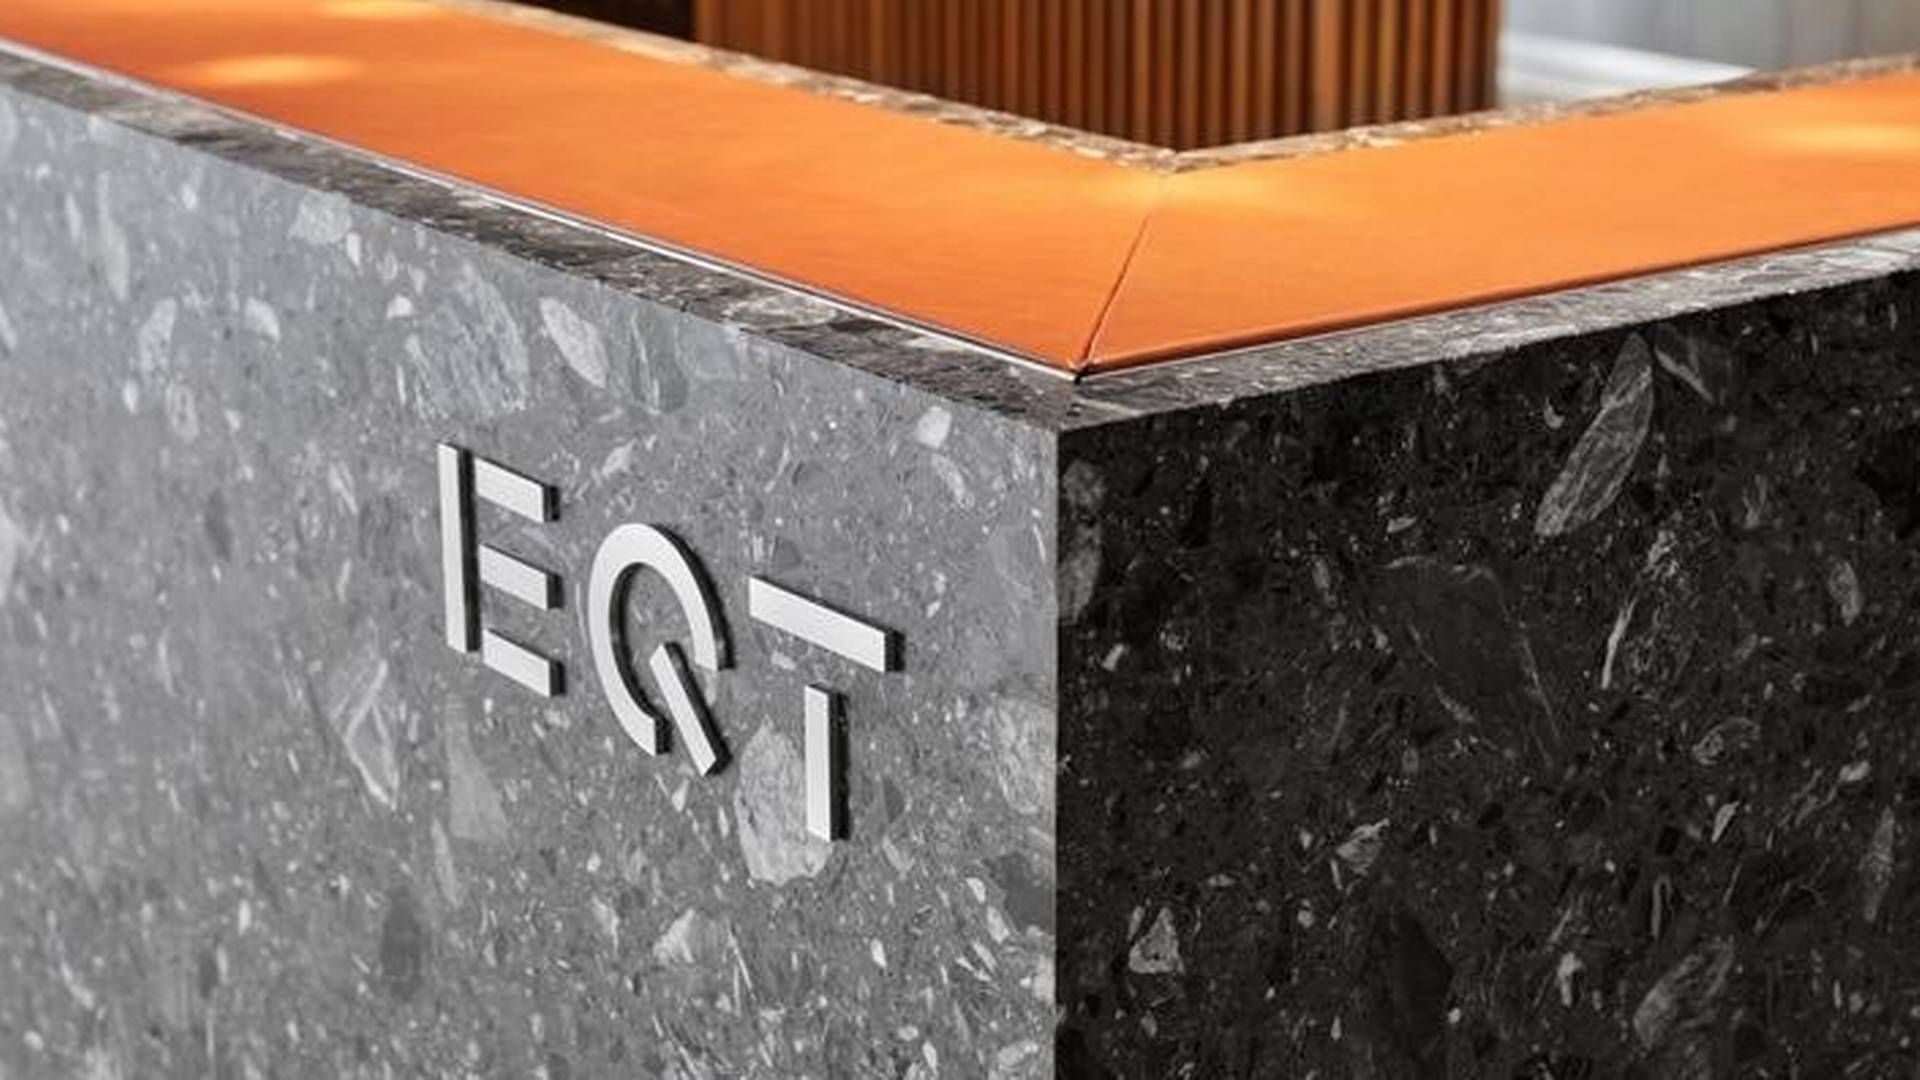 EQT udspringer af den svenske industrifamilie Wallenberg, der stiftede selskabet bag i 1994. I dag er selskabet børsnoteret og Wallenberg-familien er blandt de største aktionærer. | Foto: Eqt / Pr